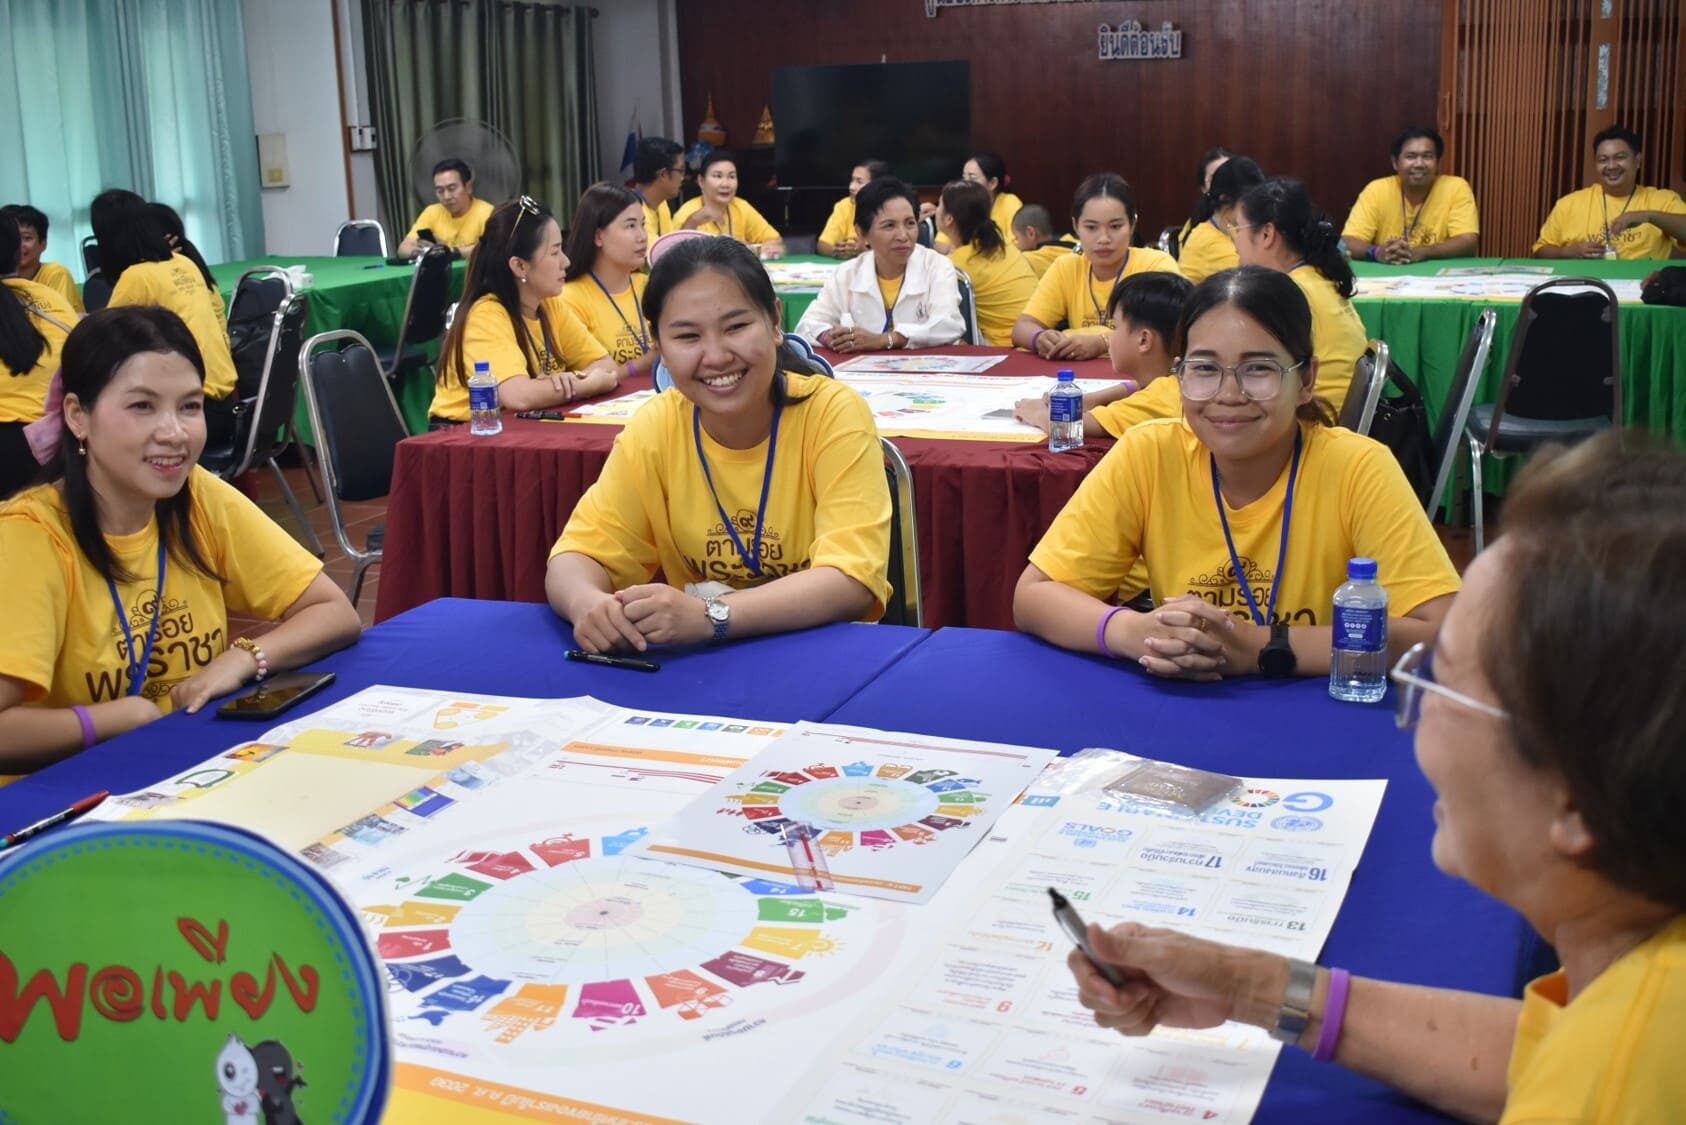 กิจกรรมถอดบทเรียน Workshop โดย อาจารย์อดุลย์ ดาราธรรม นายกสมาคมนักเรียนเก่า AFS ประเทศไทย